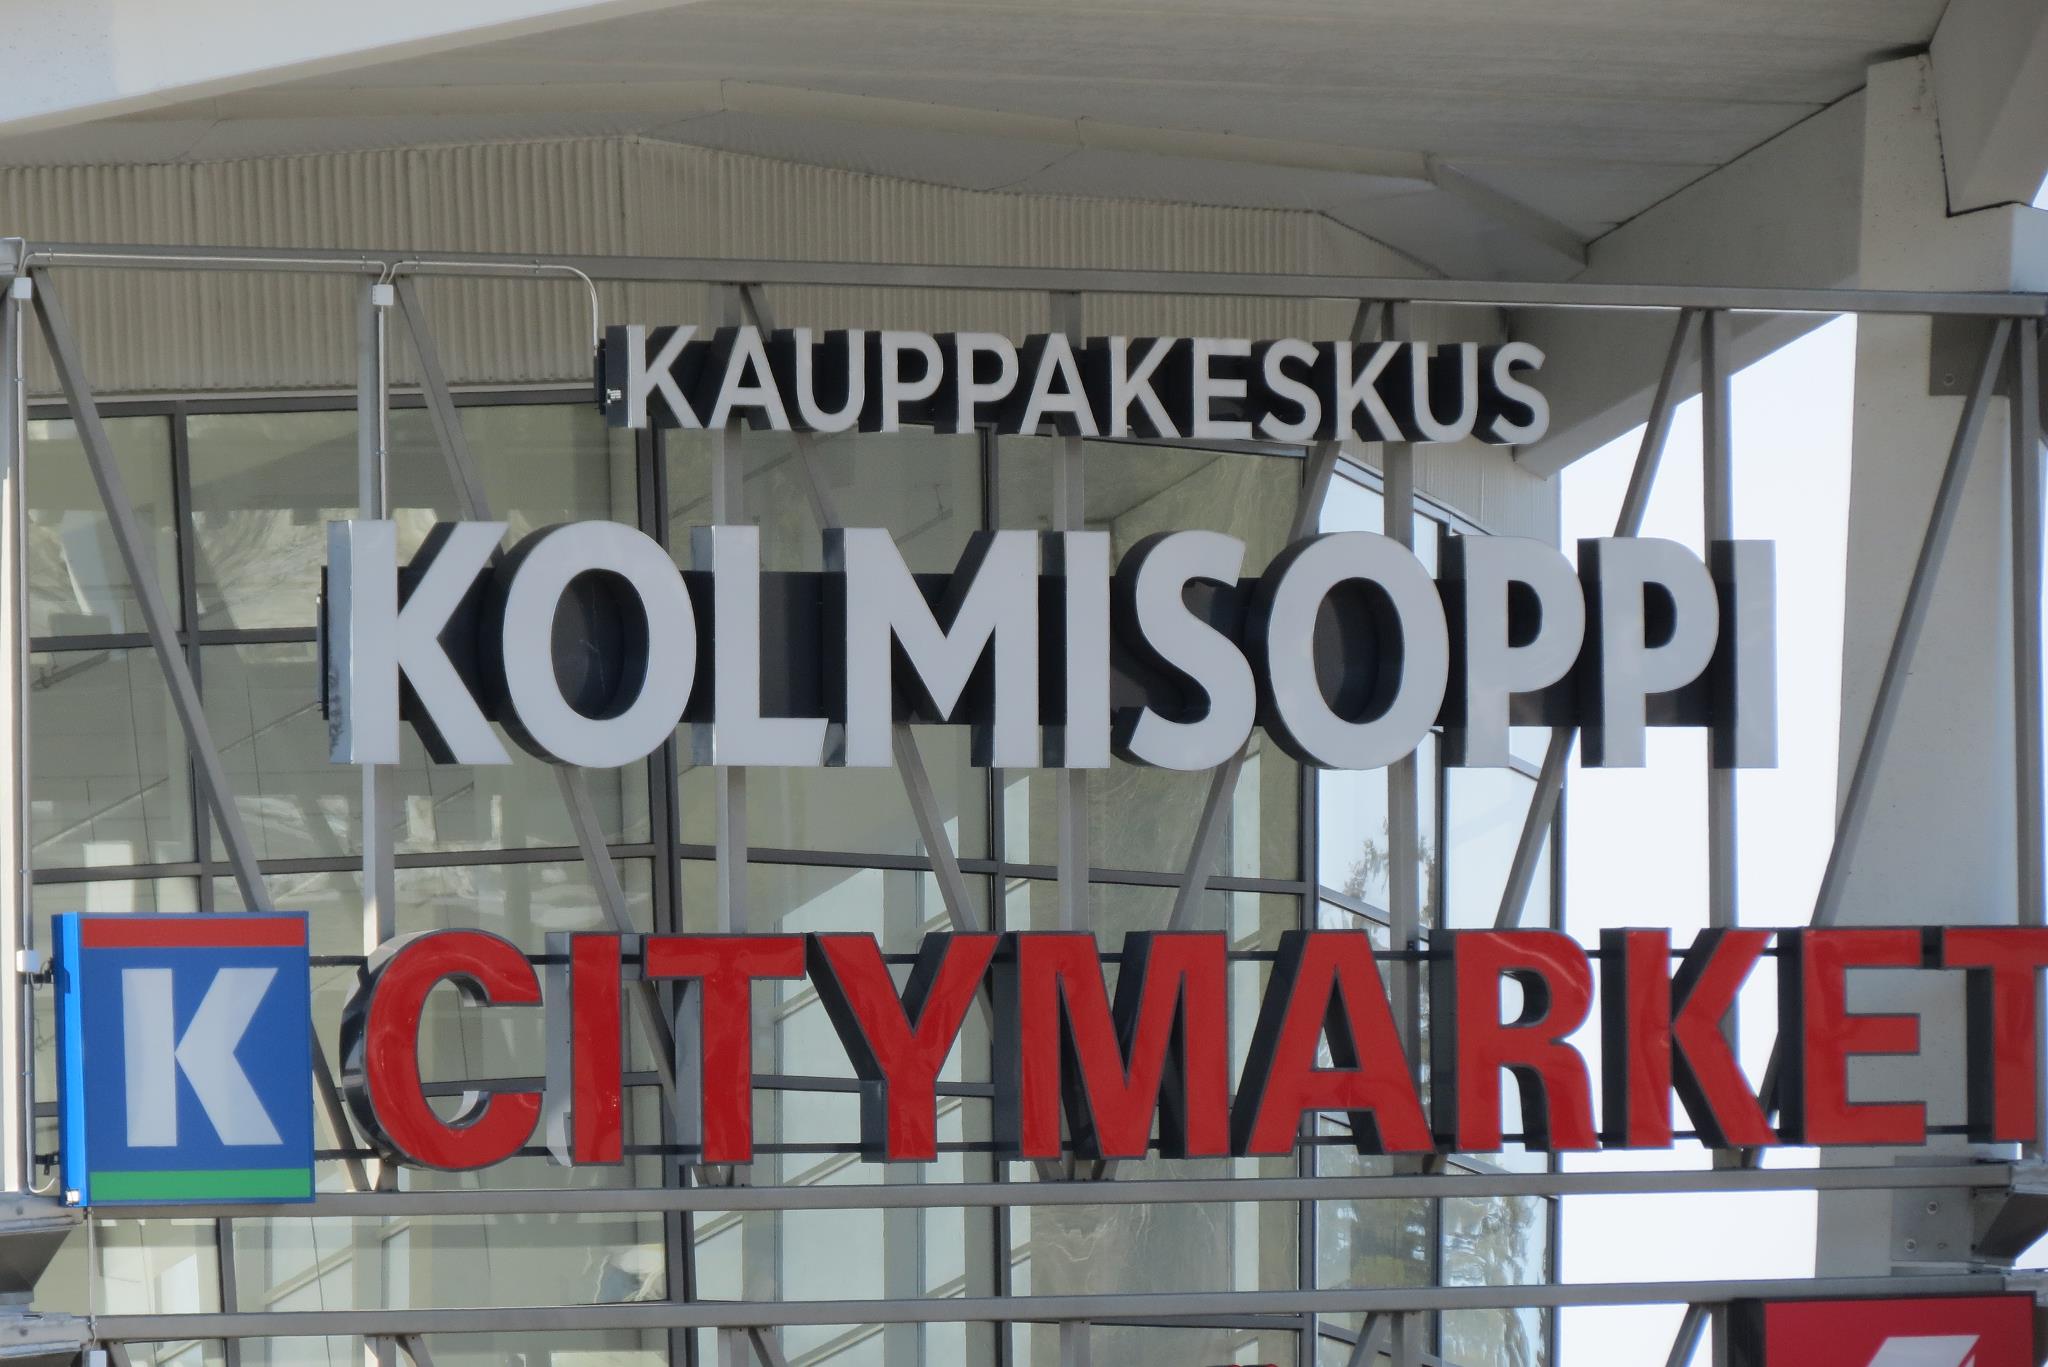 K-Citymarket, Kolmisoppi